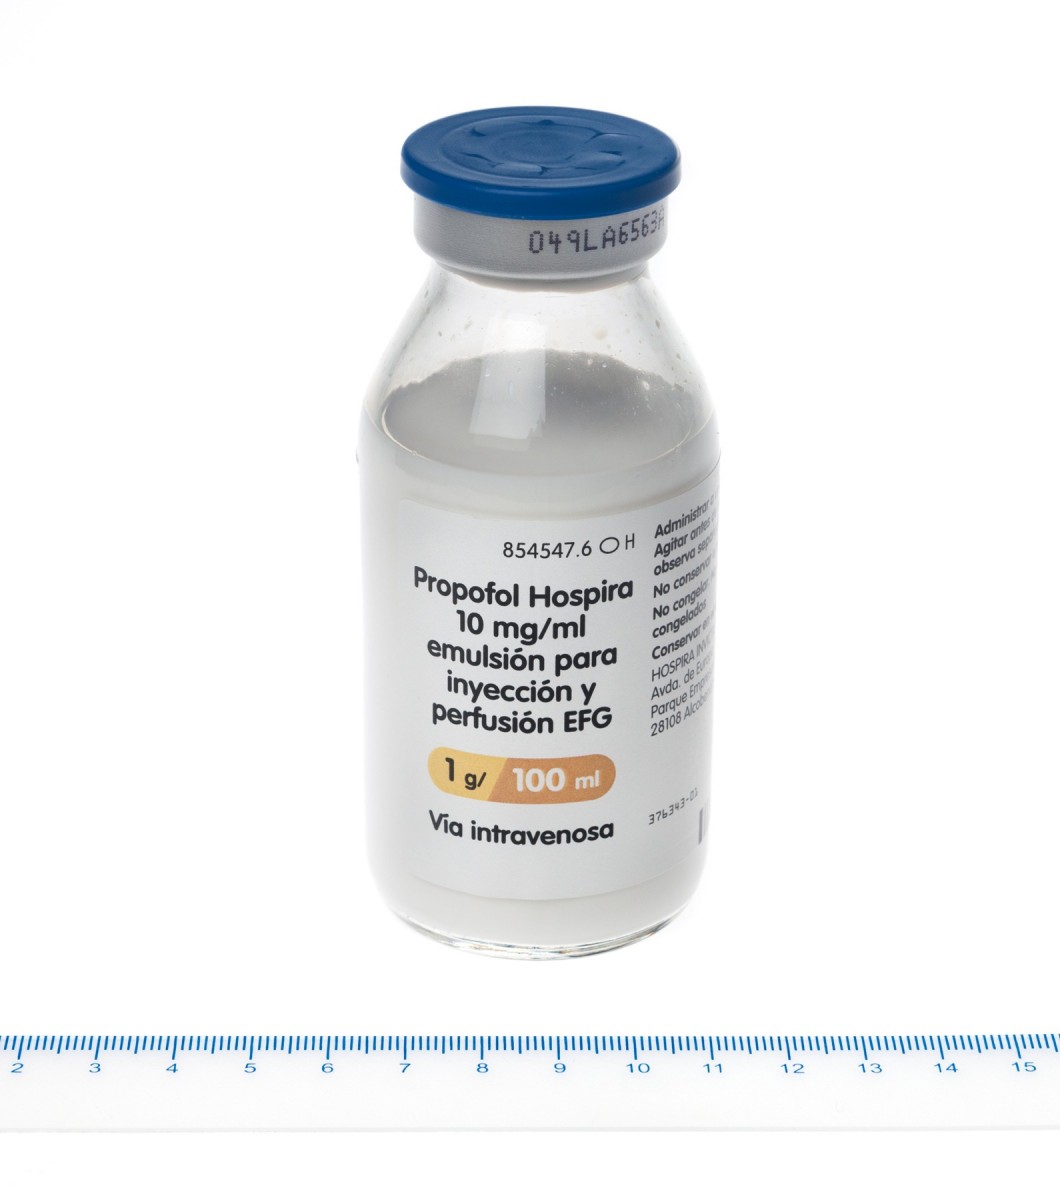 PROPOFOL HOSPIRA 10 mg/ml EMULSION PARA INYECCION Y PERFUSION EFG, 1 vial de 100 ml fotografía de la forma farmacéutica.